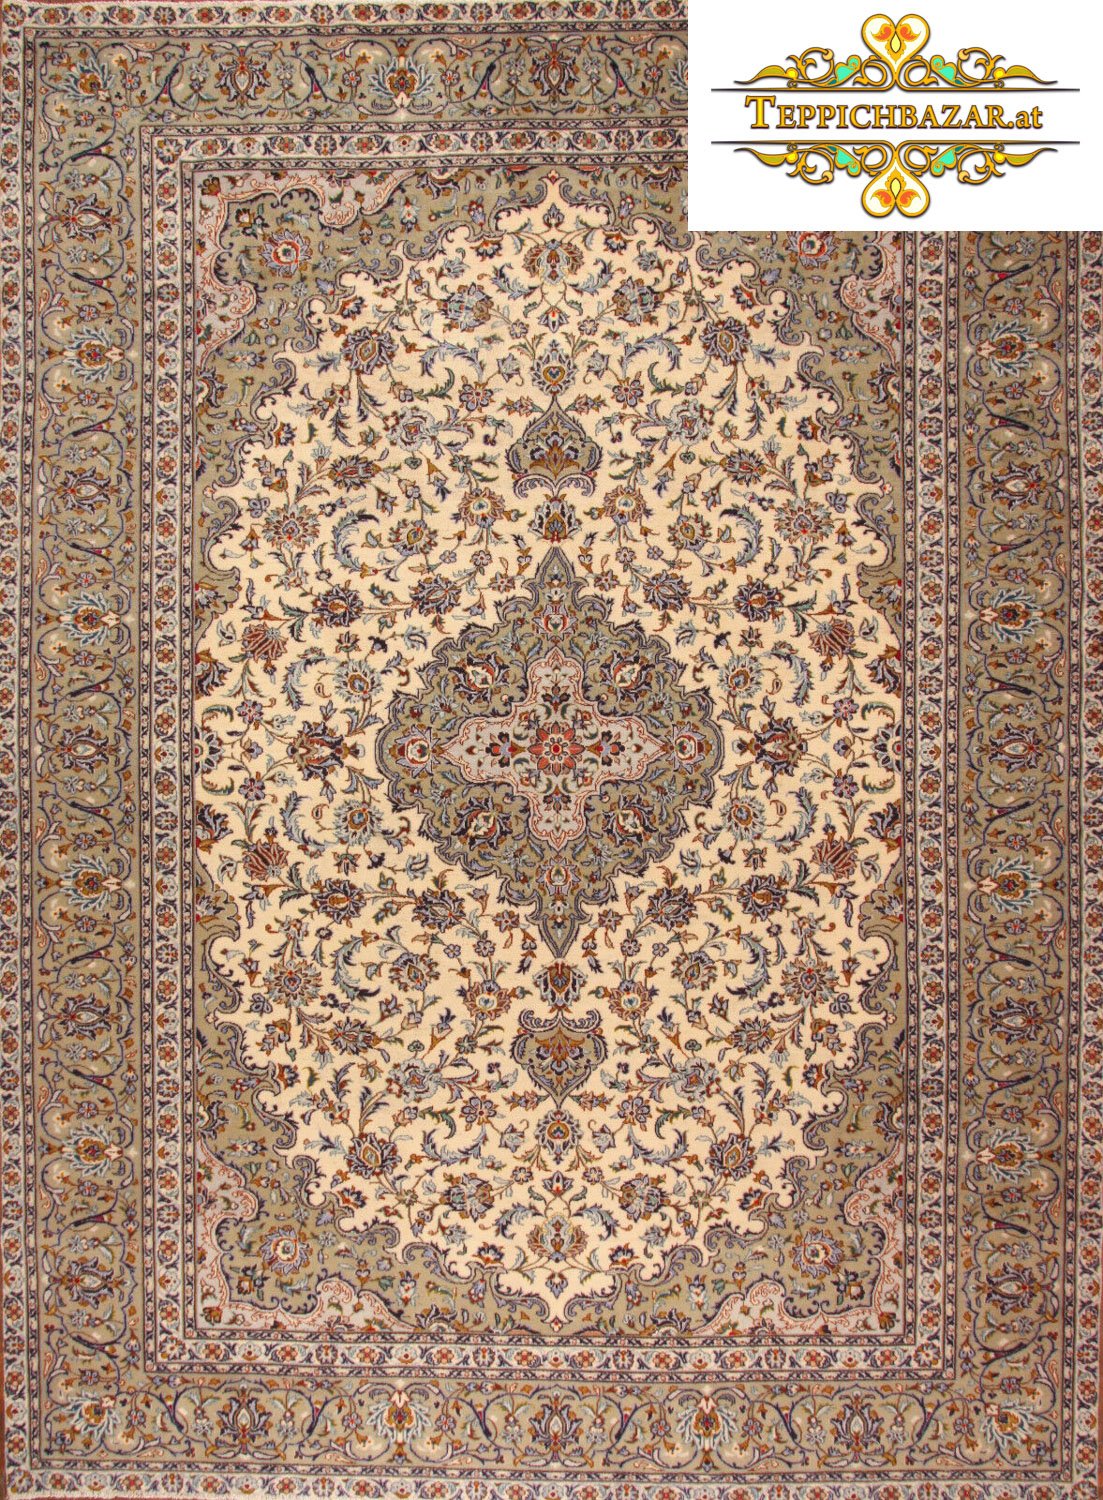 H1101) ca 390x286cm Håndknyttet Kashan (Kashan) persisk Carpetbazar.at | håndknyttede persiske og orientalske tæpper online!